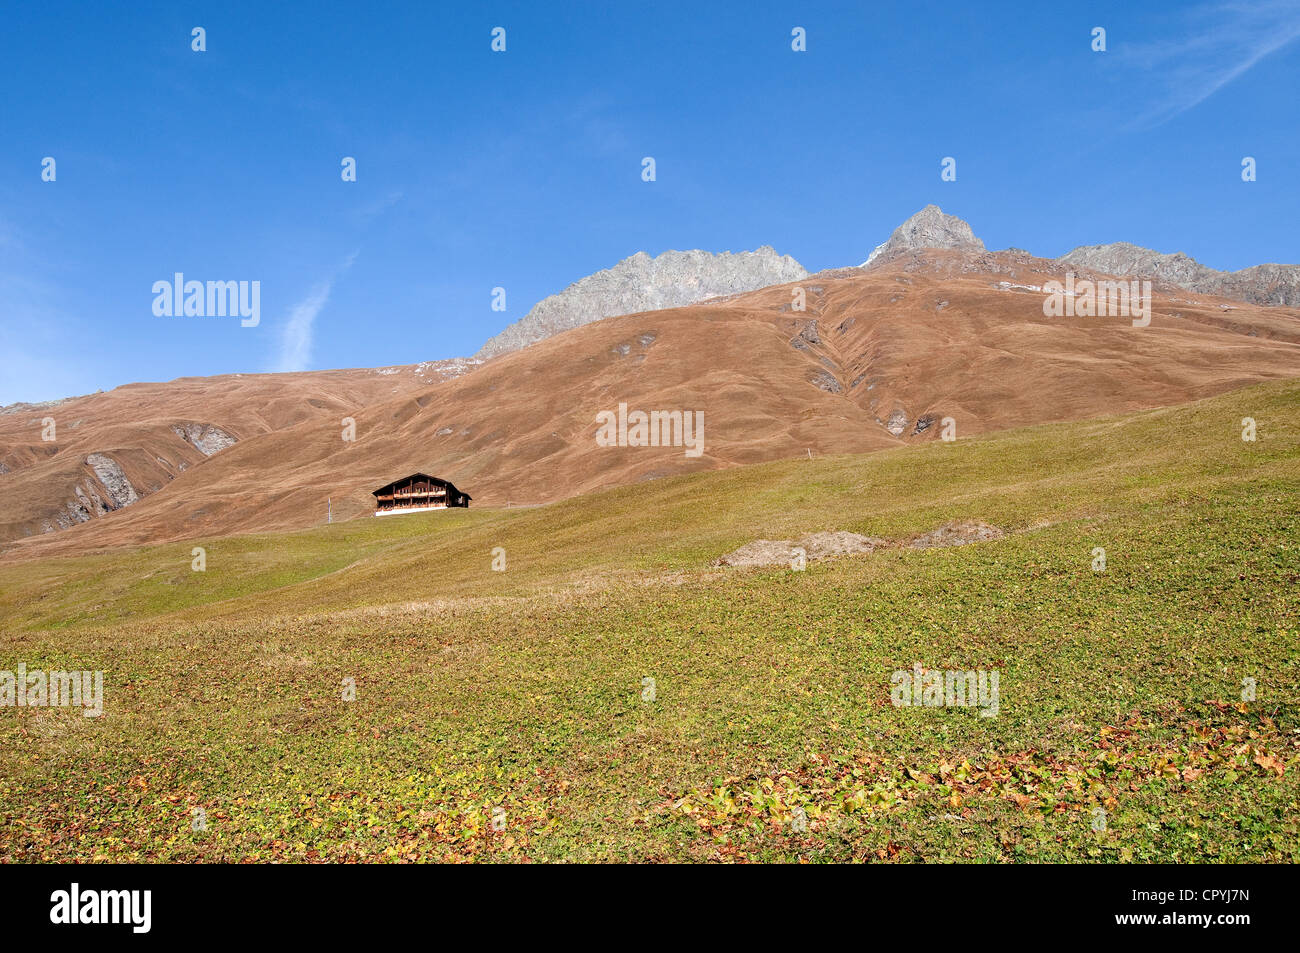 La Suisse, Canton des Grisons, Juf, le plus haut village habité en permanence de l'Europe (2200m), chalet isolé Banque D'Images